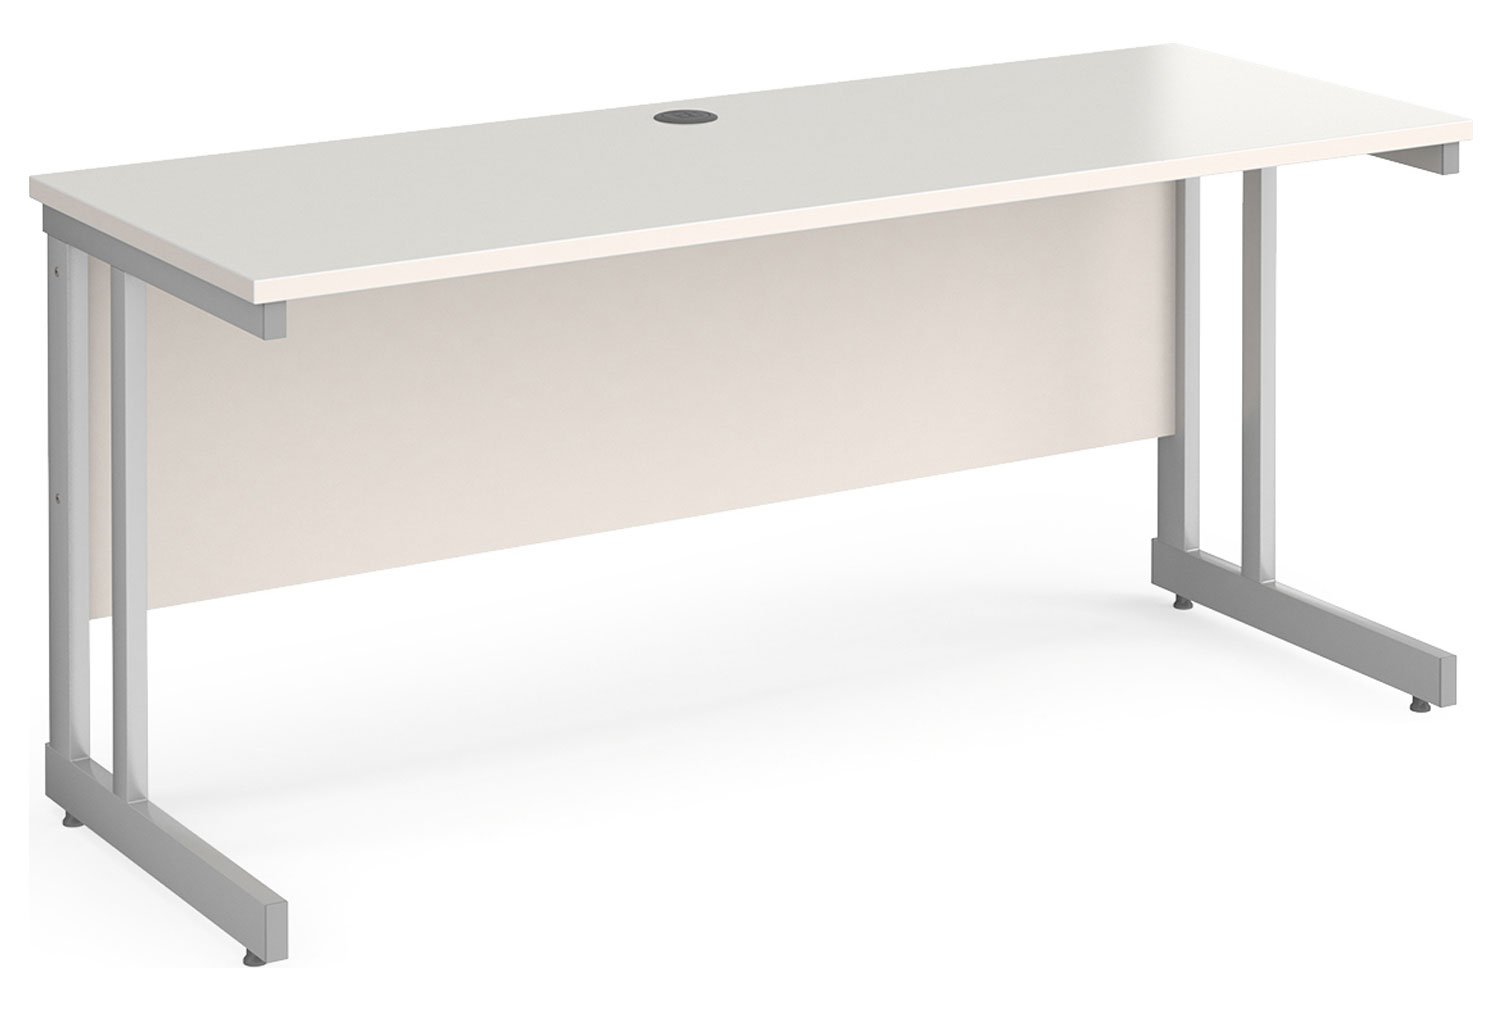 Tully II Narrow Rectangular Office Desk, 160w60dx73h (cm), White